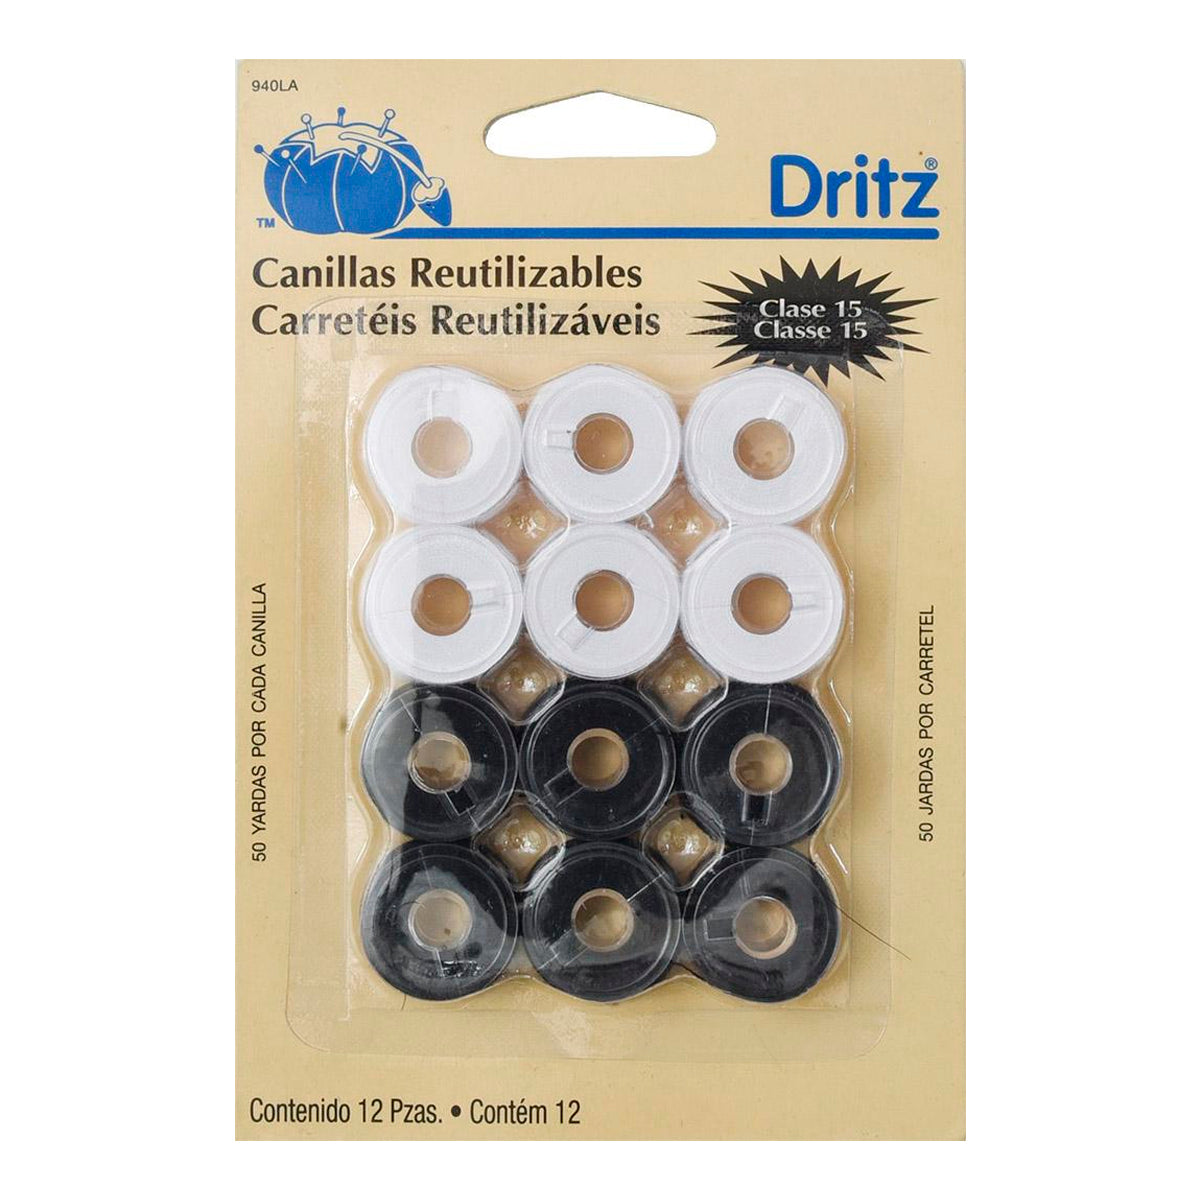 Carreteles Dritz Reutilizables 940LA